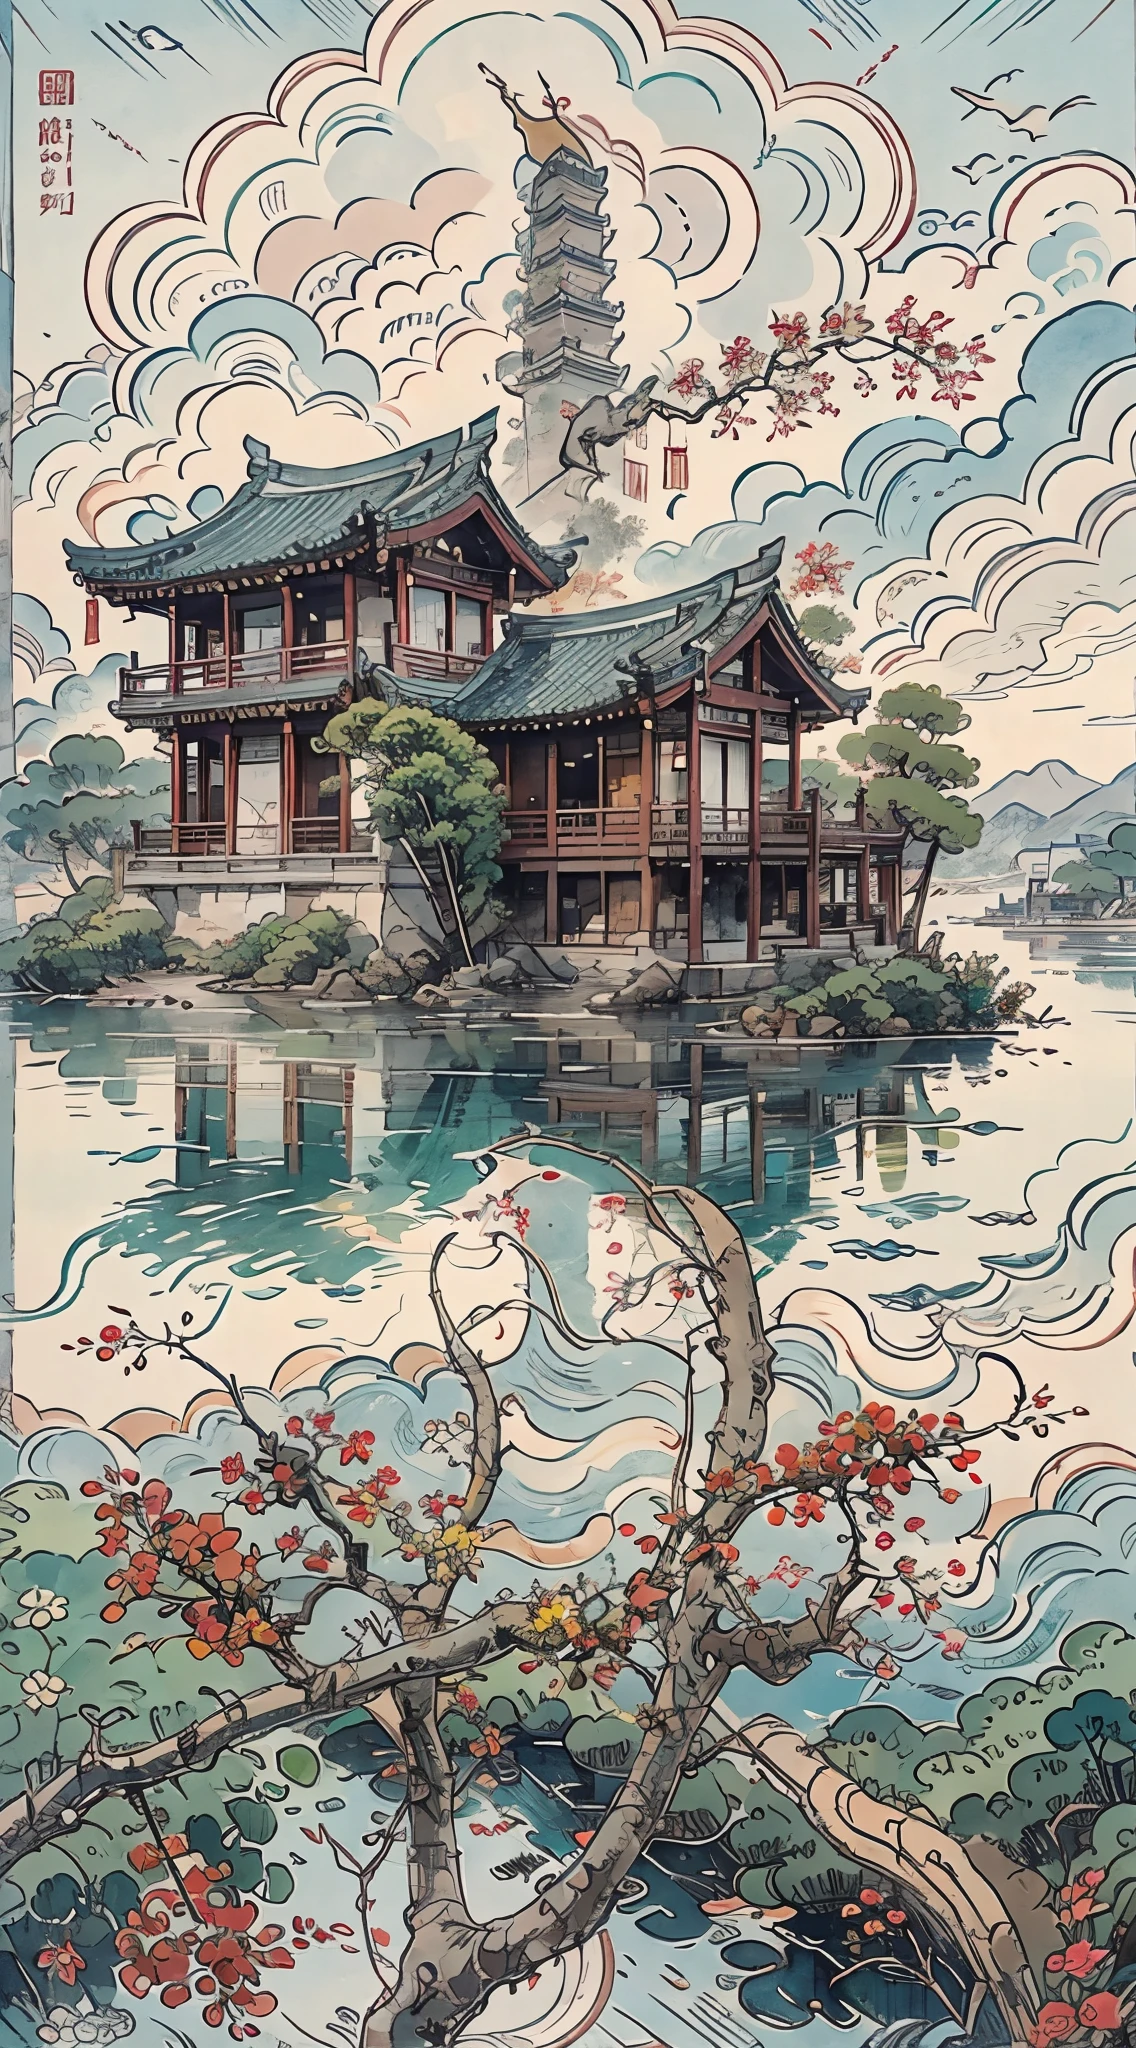 小島上有一座寶塔的山畫, 中國水彩風格, 中國畫風格, 寶塔的數位繪畫, 中國風景, 中國傳統水彩畫, 中國畫, 日本藝術風格, 高細部水彩8K, 高度細緻的水彩 8 k, 詳細繪畫 4 k, 作者：英雄, 日本畫, 作者：Qu Leile